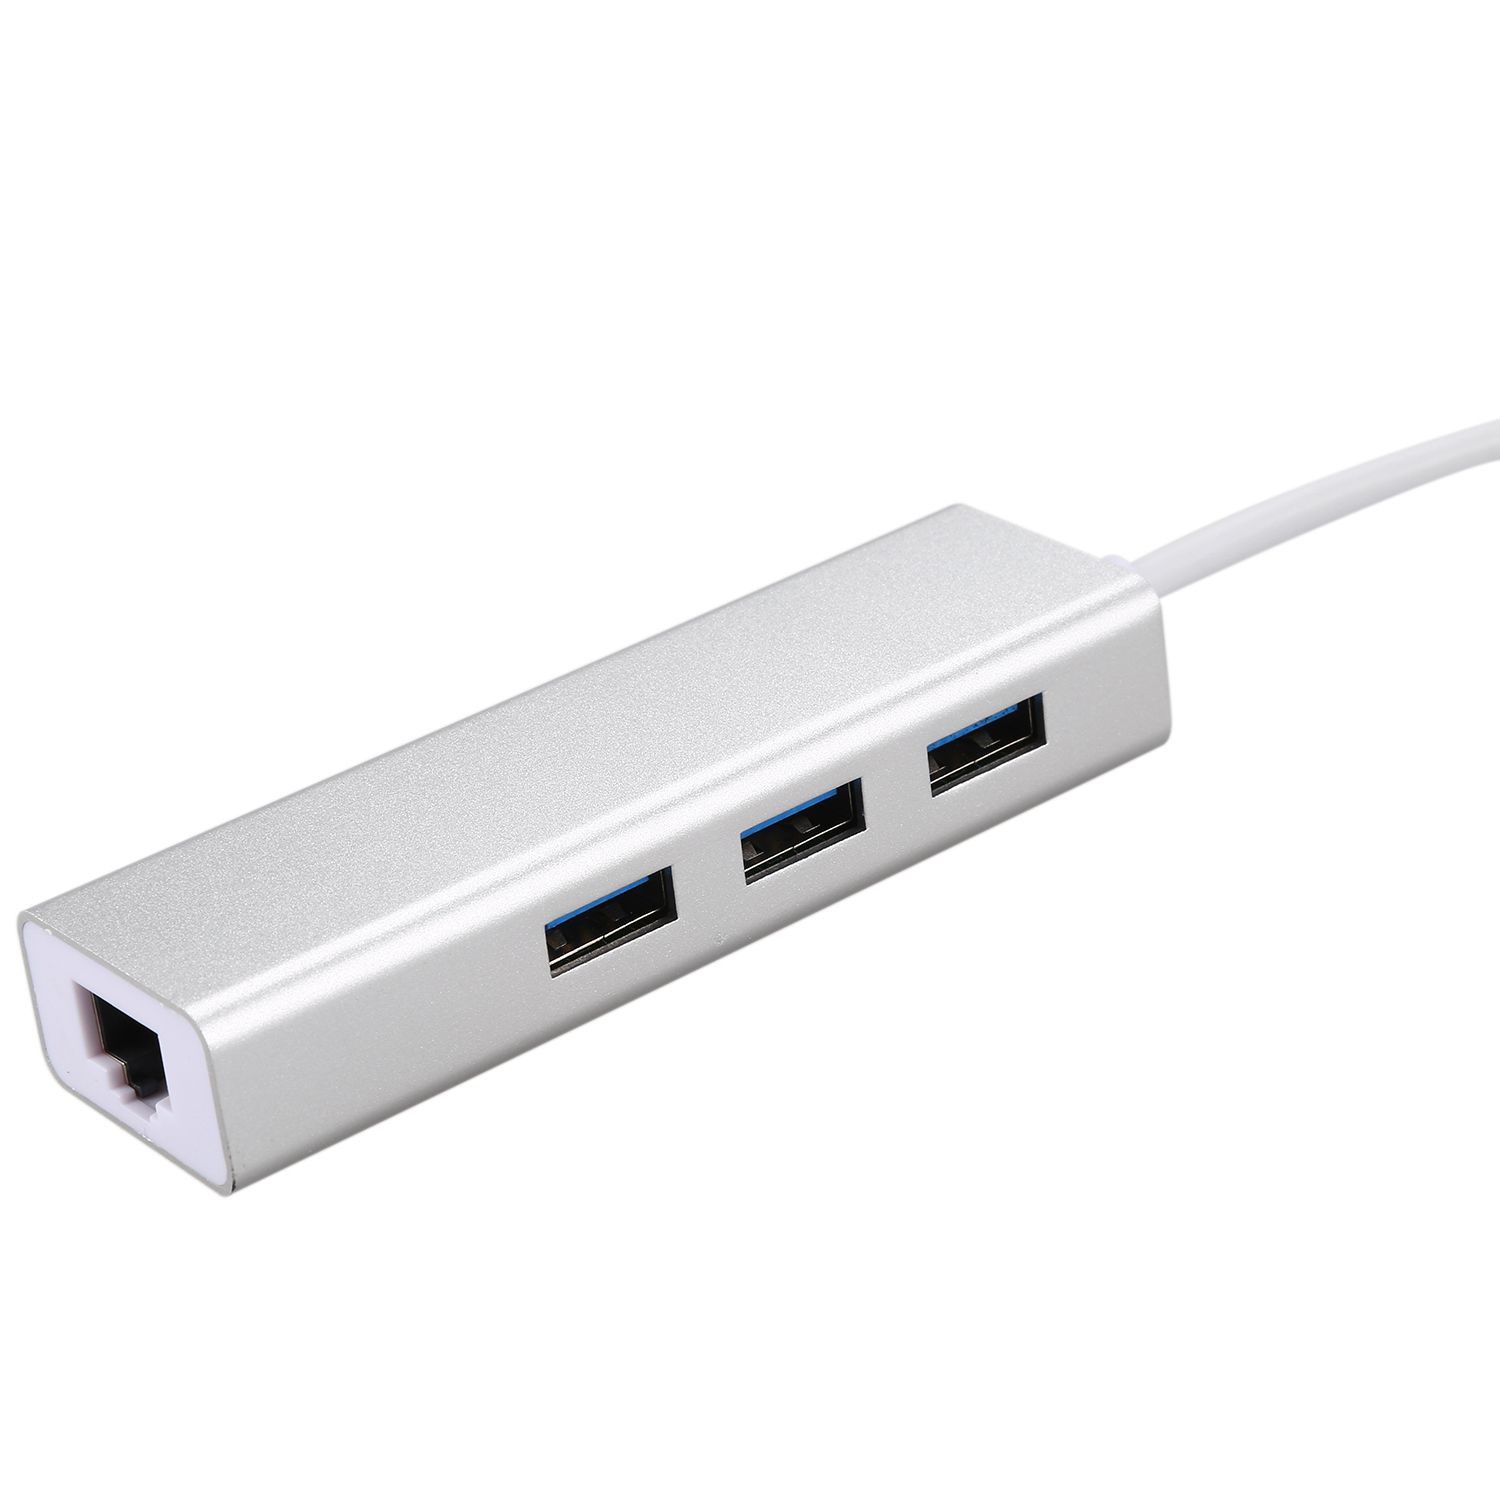 Bộ Chia 3 Cổng Usb 3.0 Gigabit Ethernet Tiện Dụng